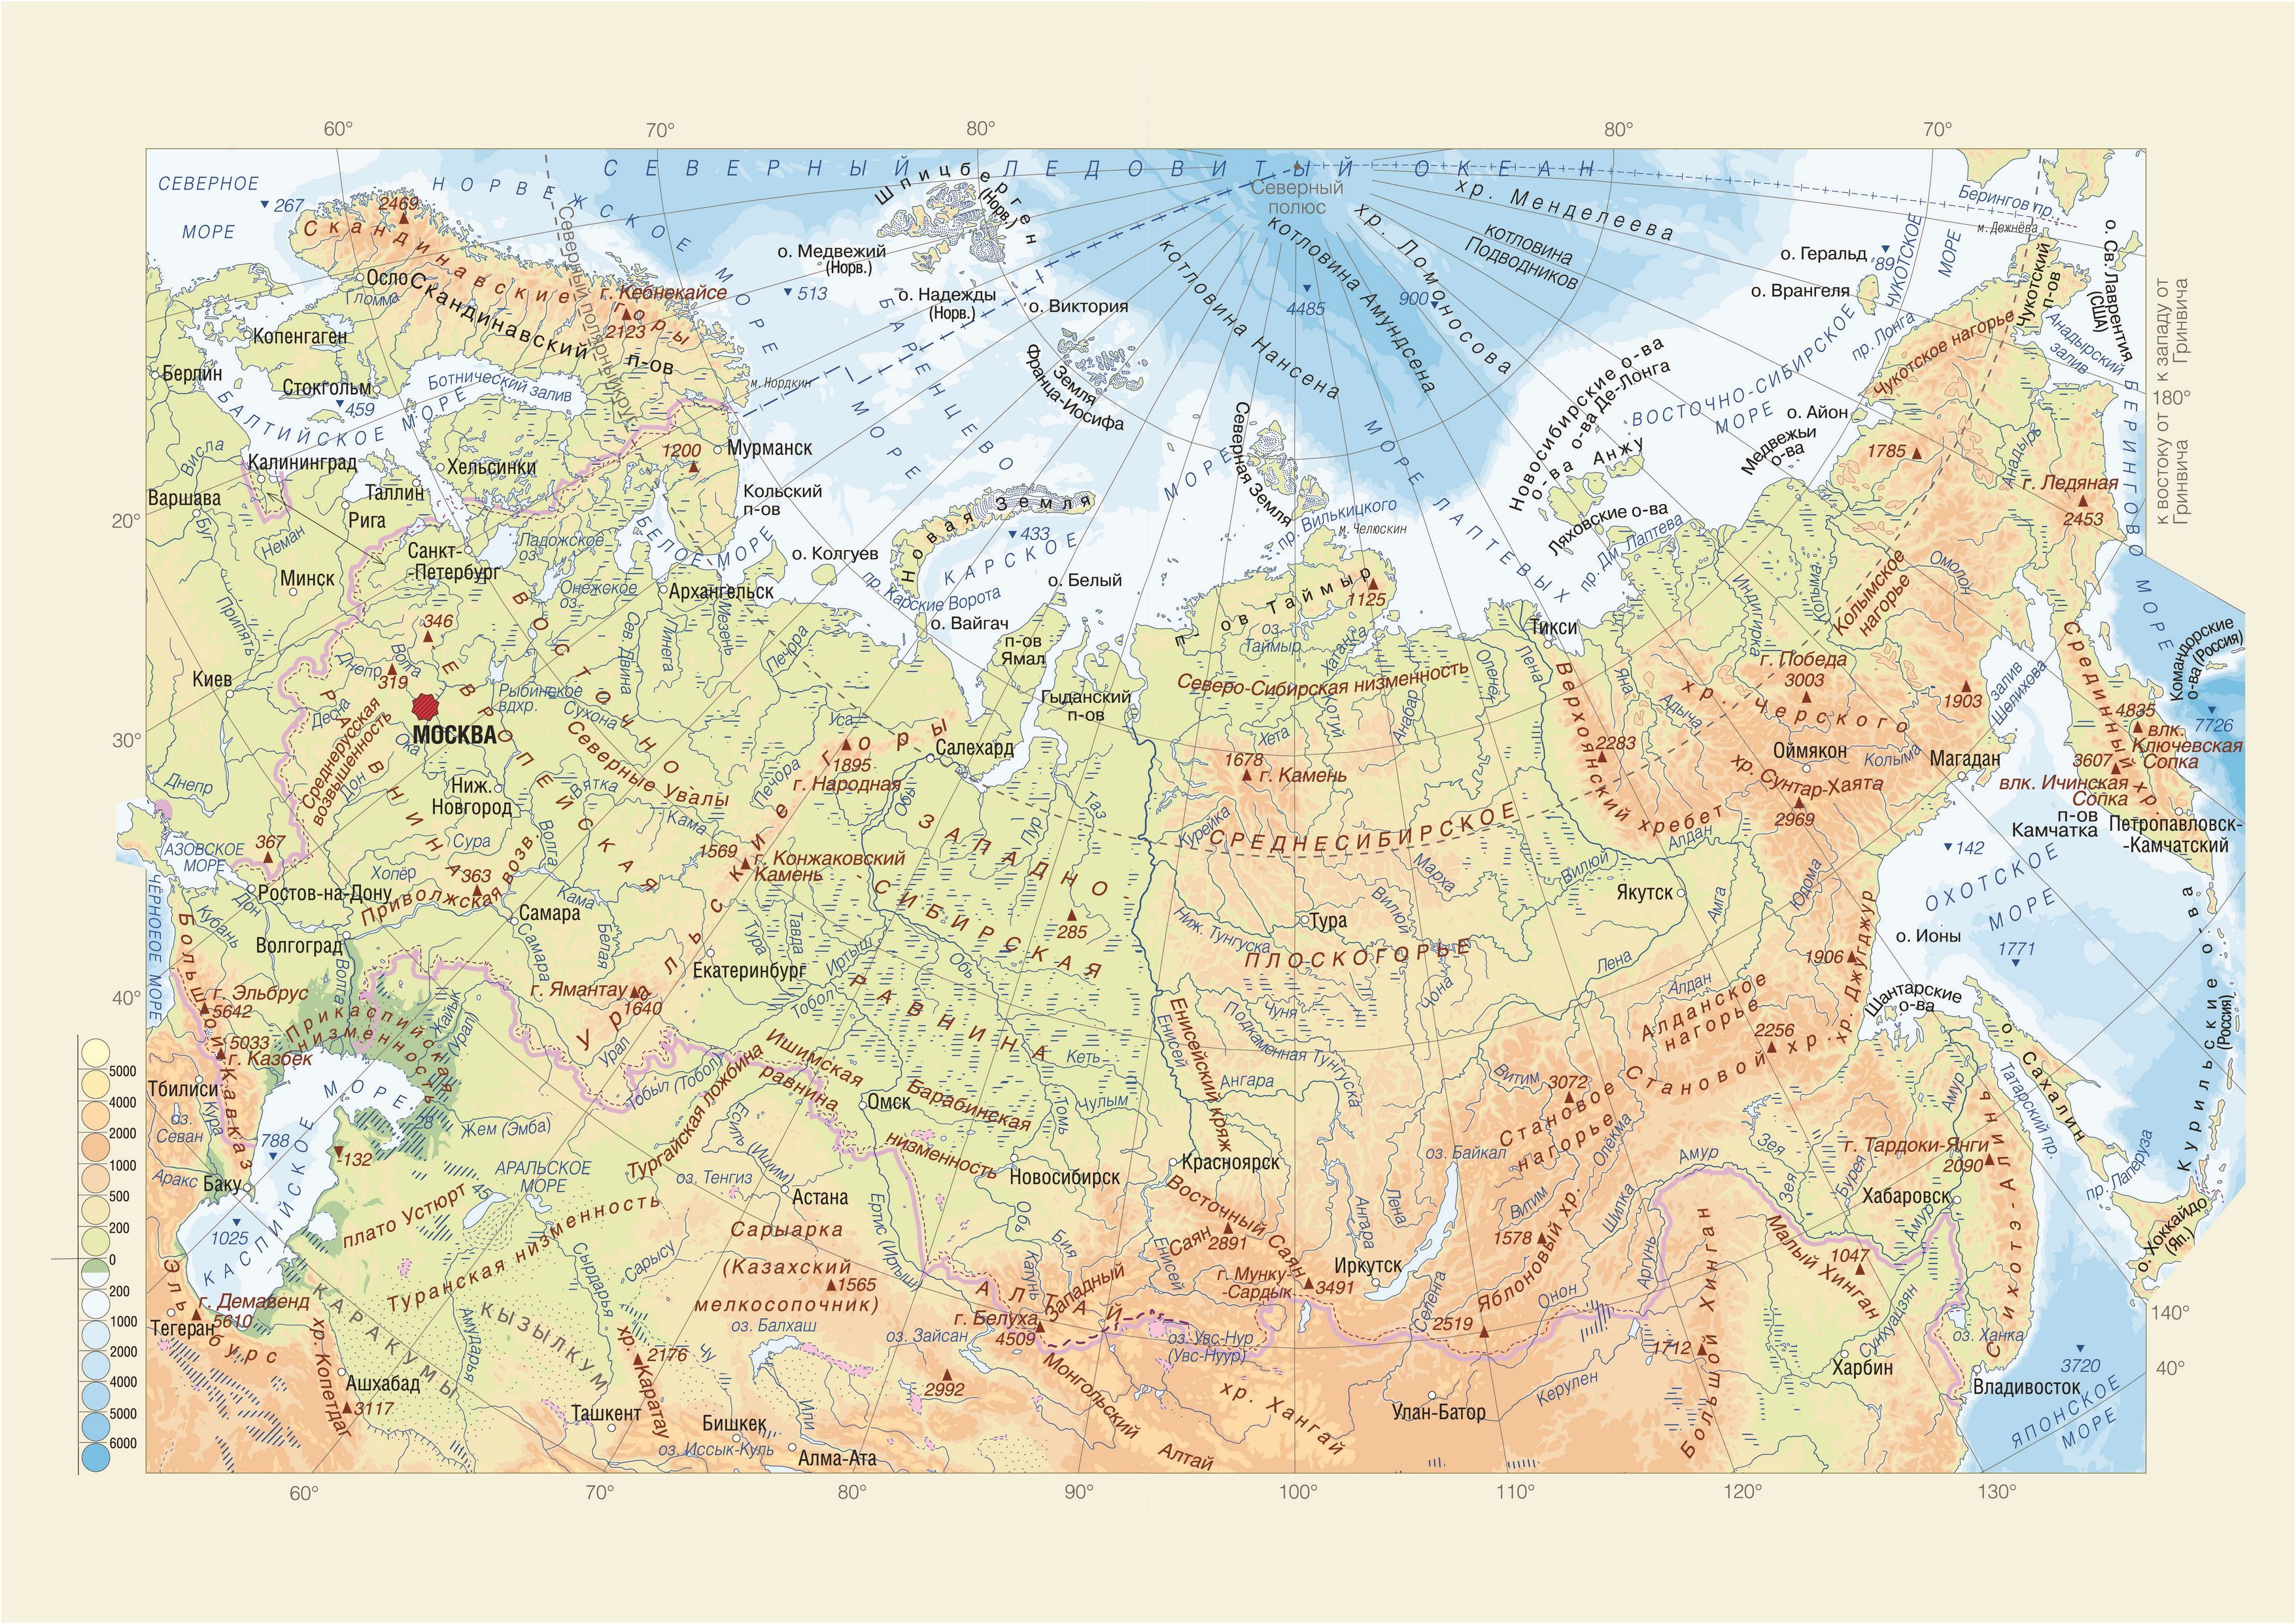 Физическая карта Российской Федерации